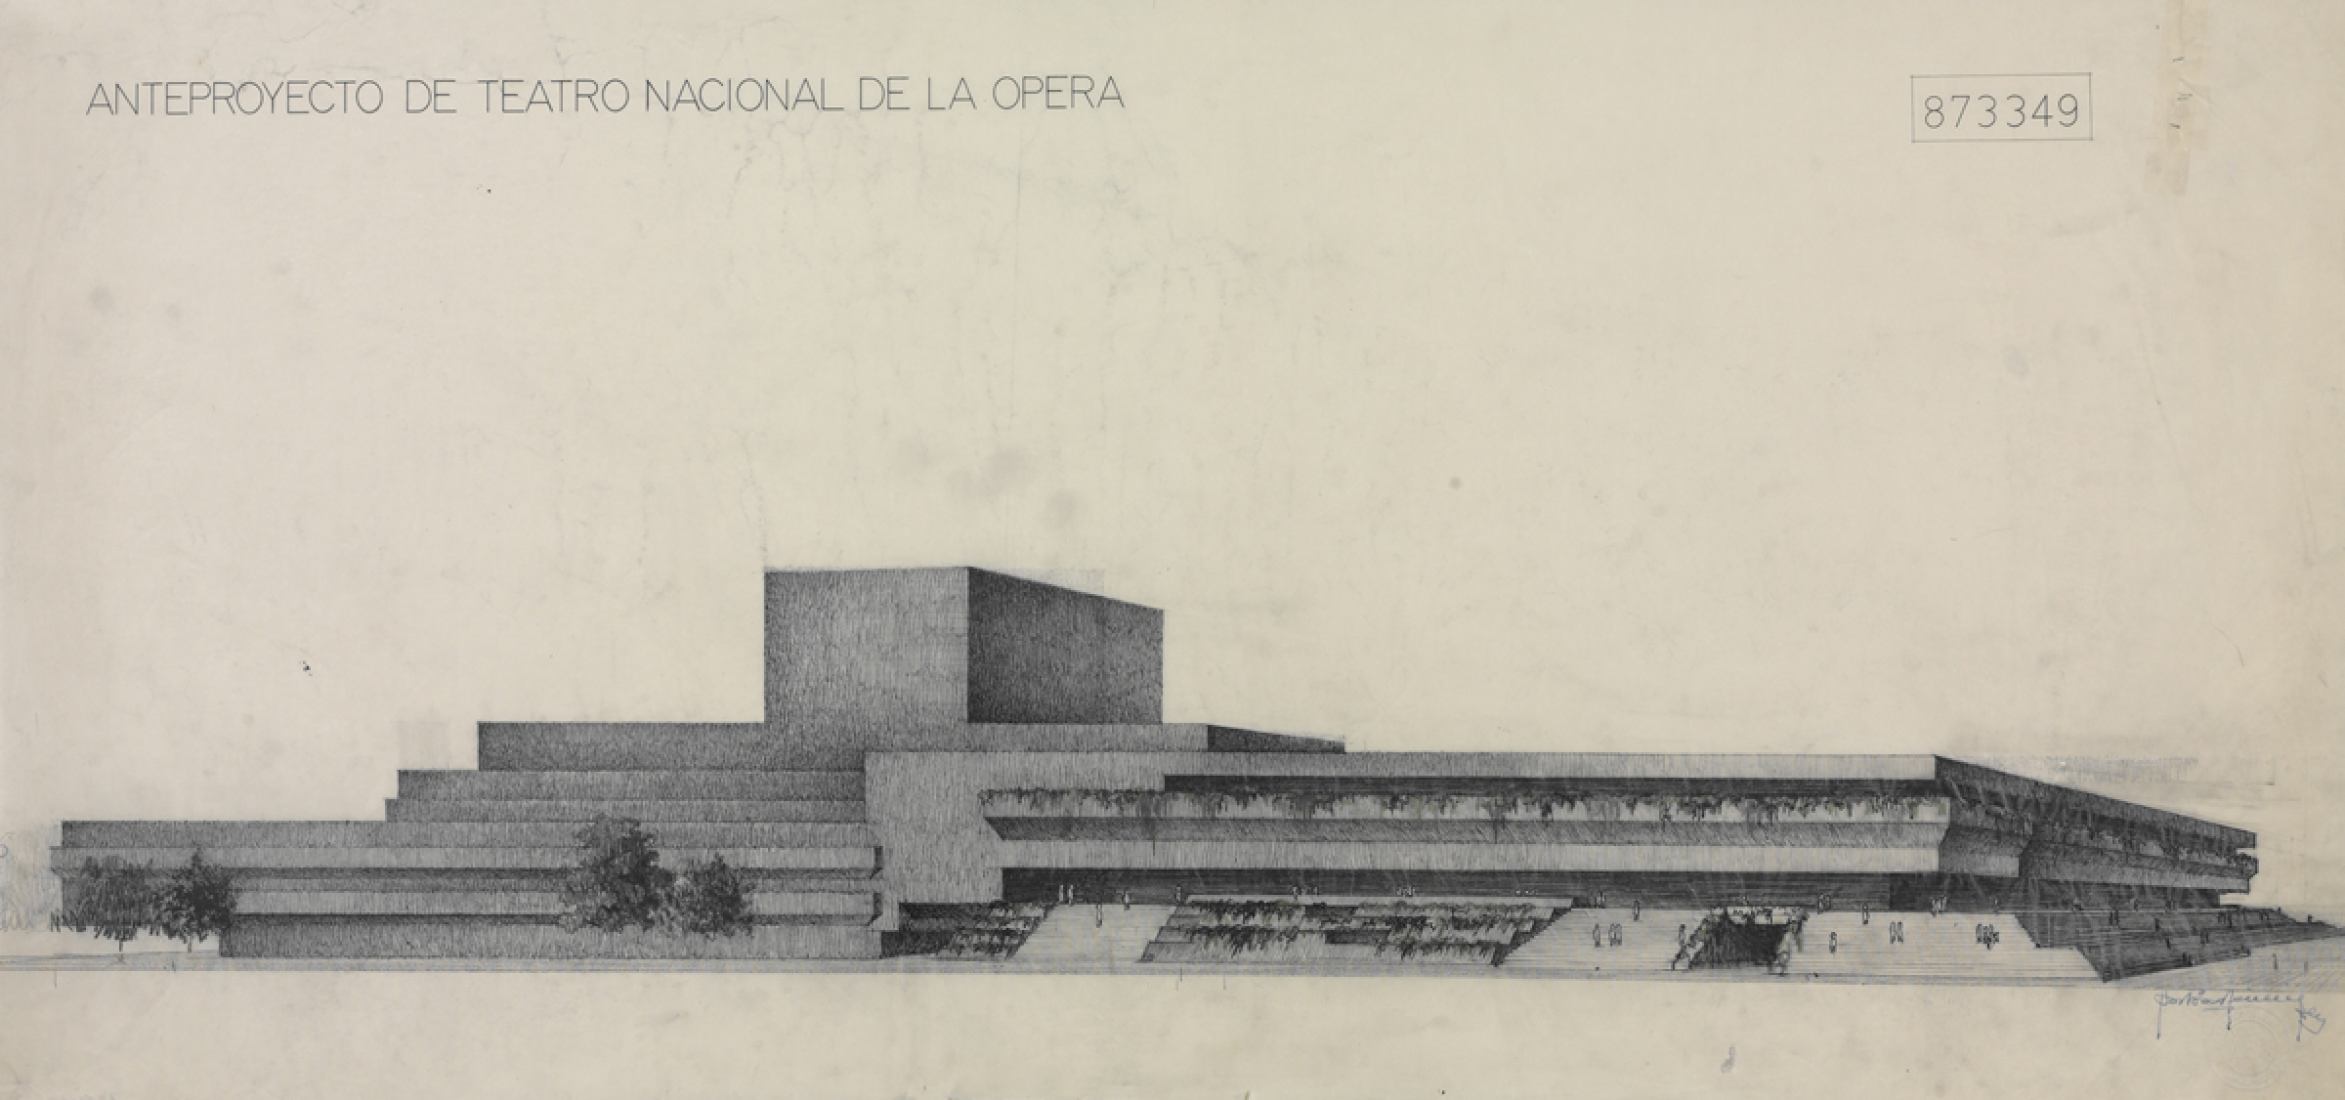 Antonio Fernández Alba, Anteproyecto de Teatro Nacional de la Opera, 1962. BNE DIB/18/1/6401.